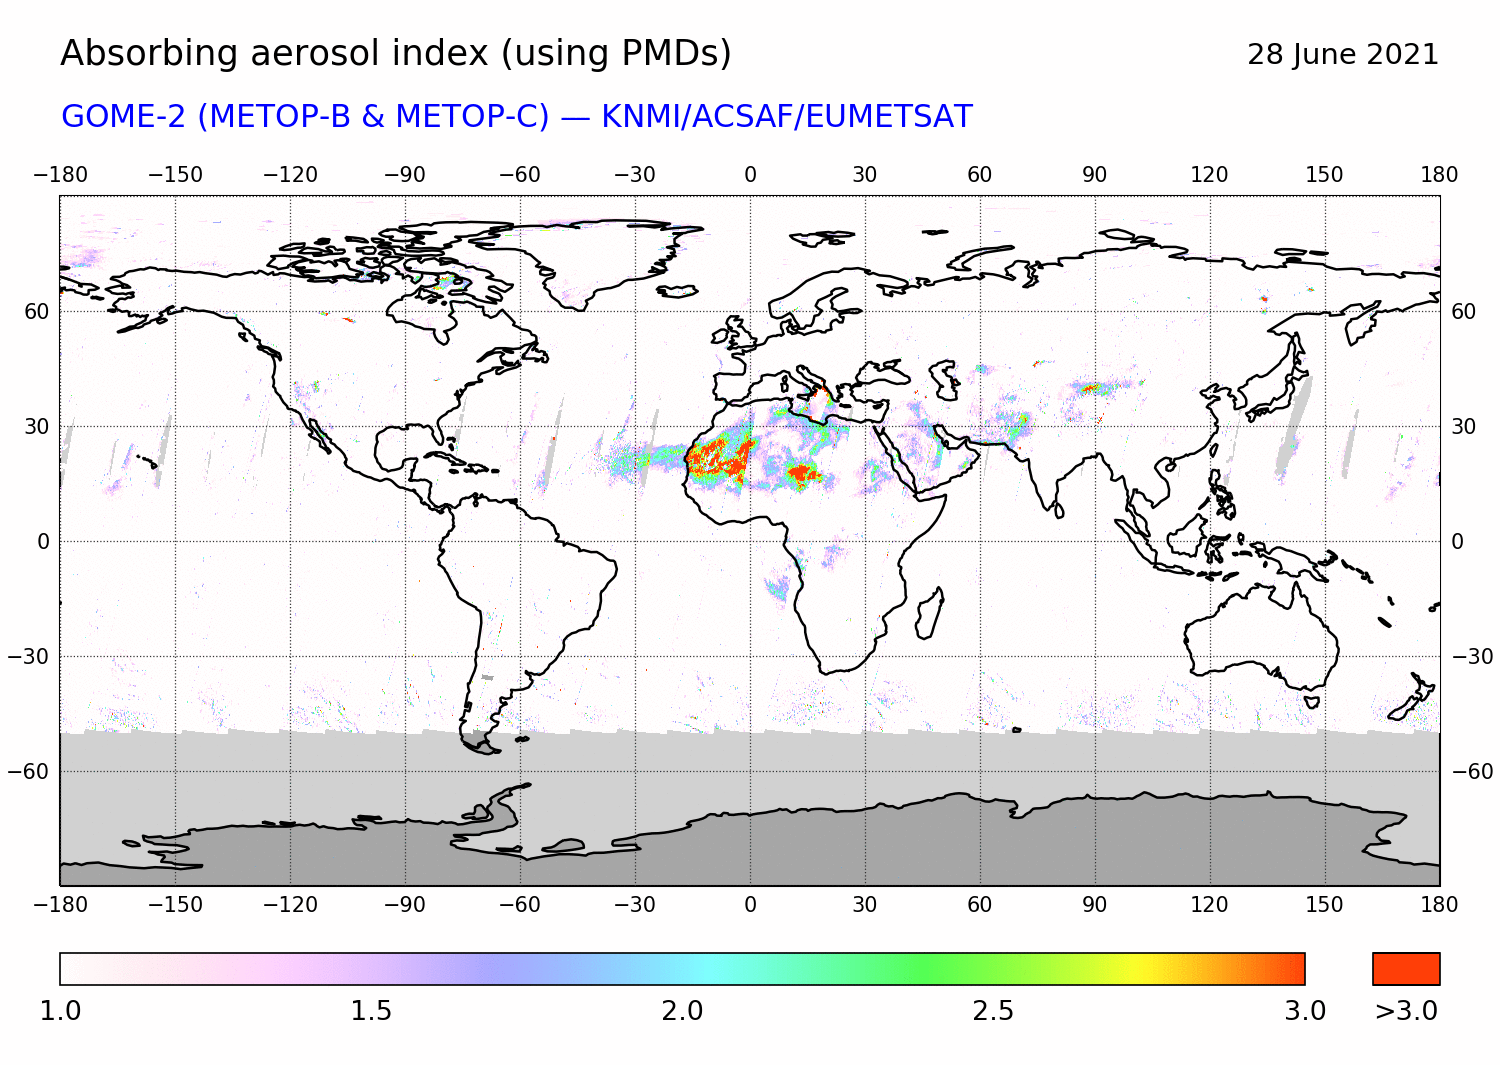 GOME-2 - Absorbing aerosol index of 28 June 2021